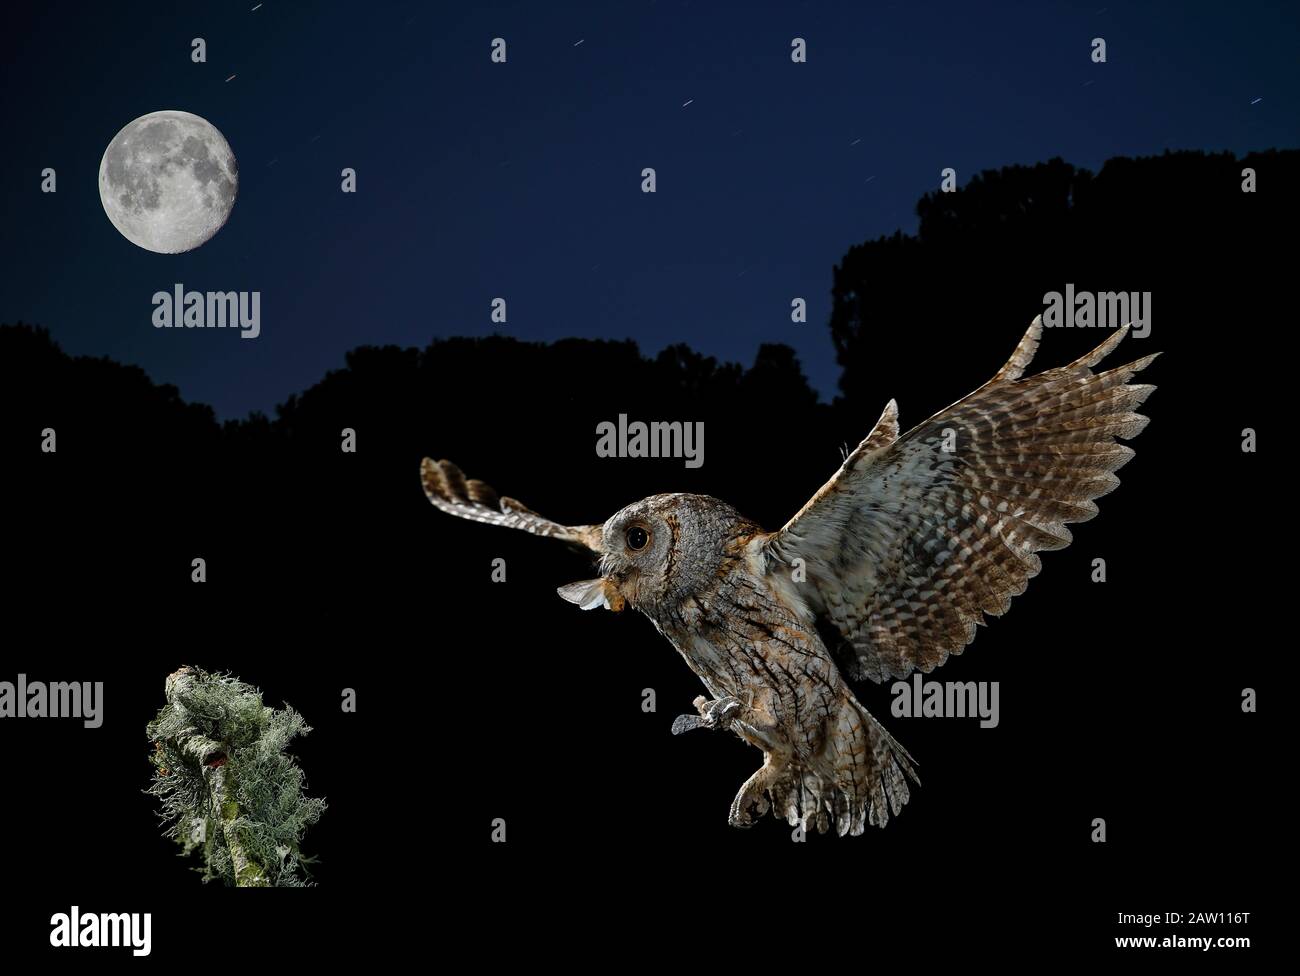 Eurasische Scopen-Eule (Otus-Schrecken). Erwachsene fliegen nachts mit Beute und Mond im Blick. Salamanca, Castilla y León, Spanien Stockfoto